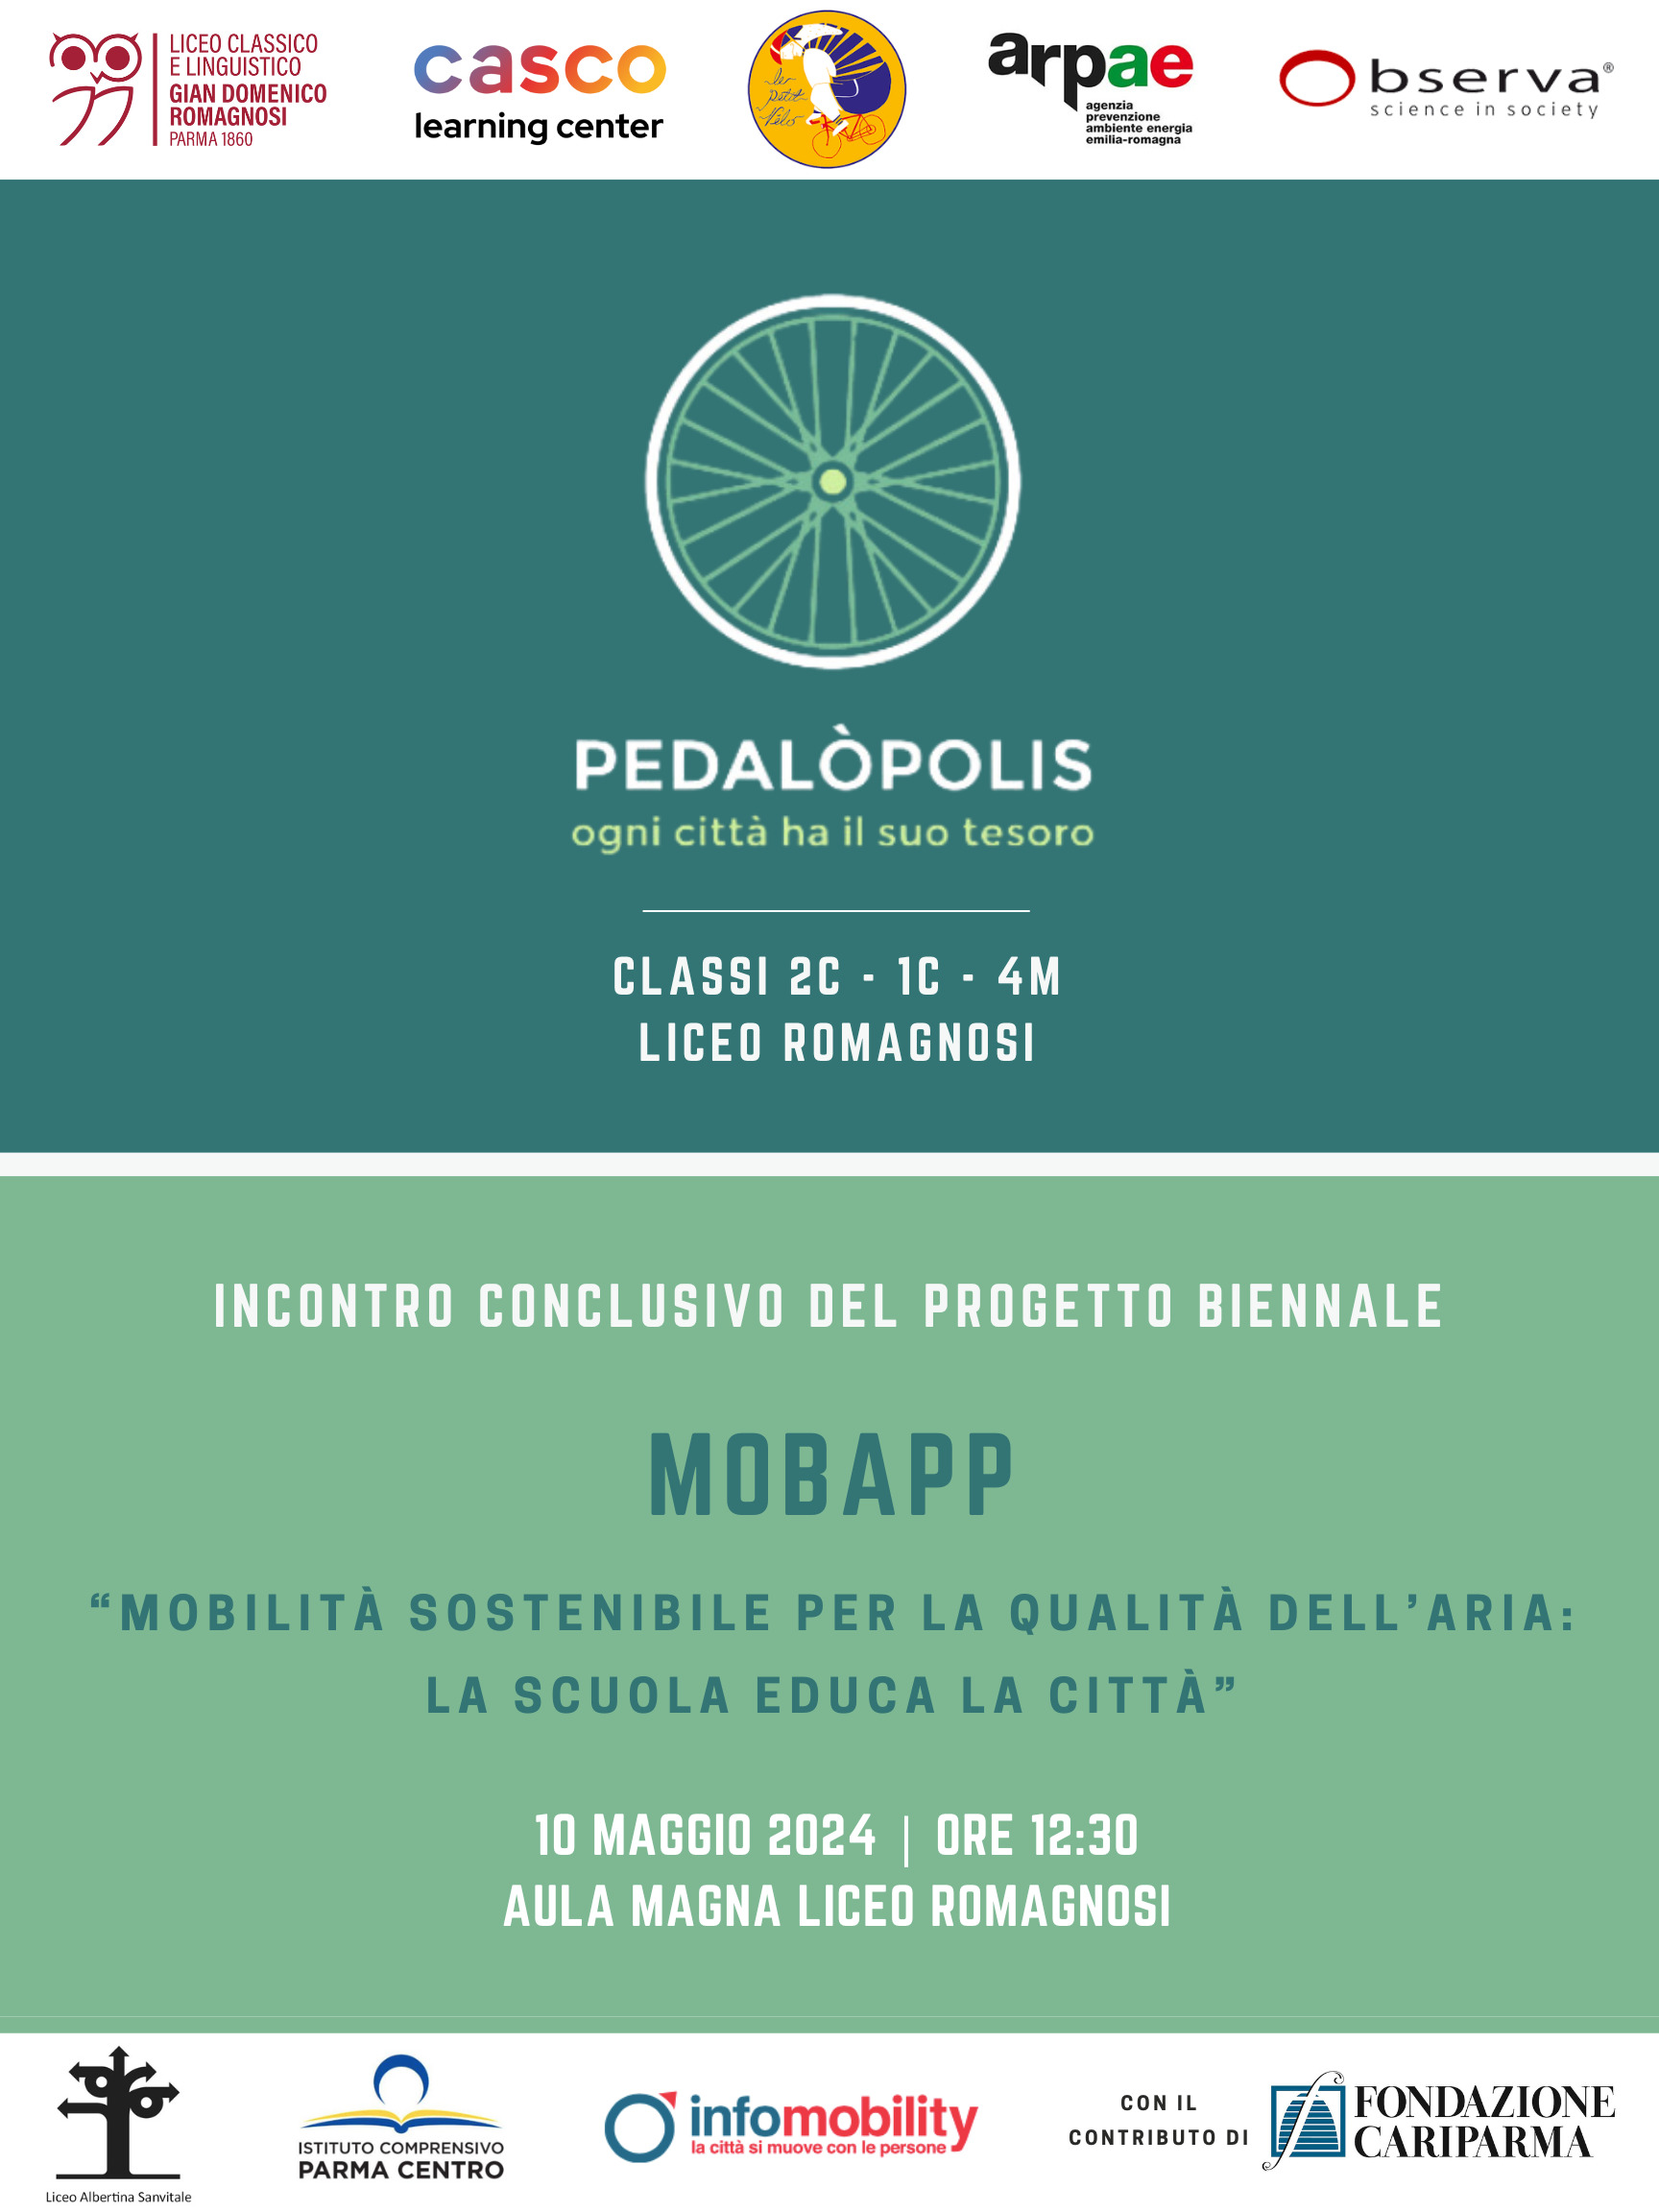 PEDALOPOLIS  una webapp per la mobilità sostenibile a Parma